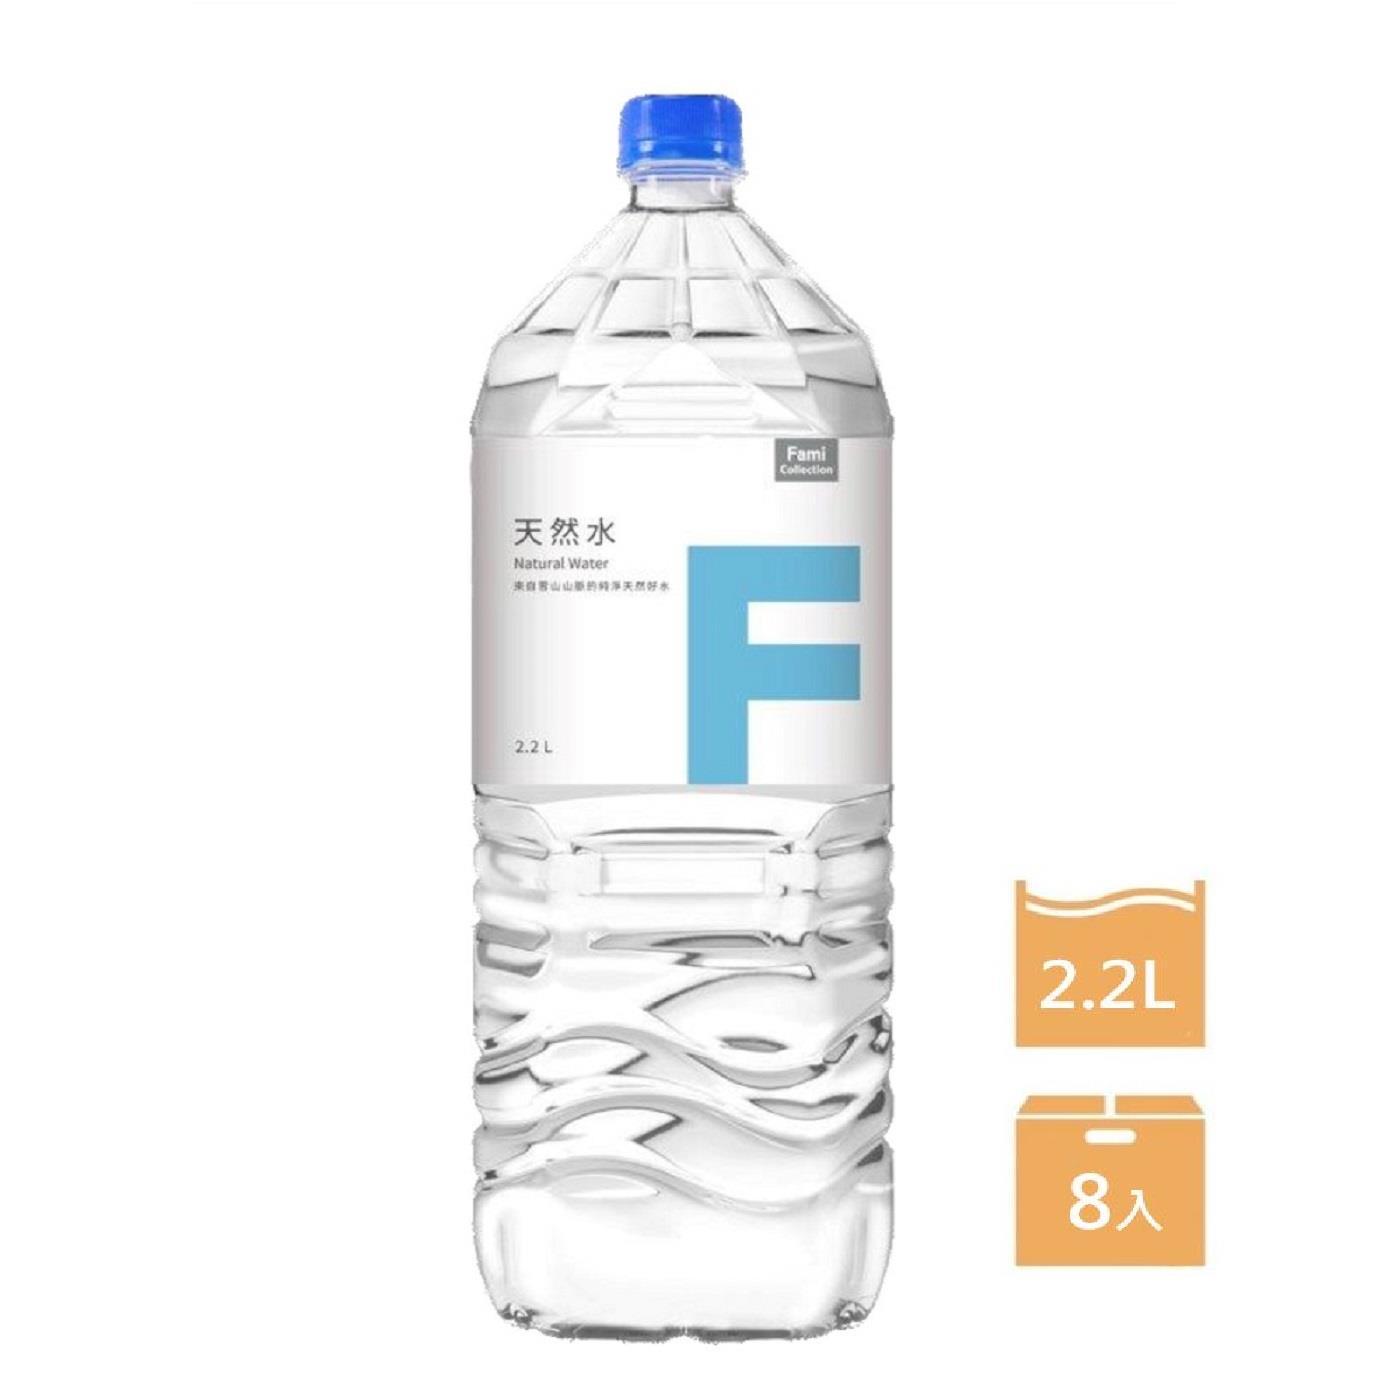 【FMC】箱購FMC天然水2.2L(2200mlx8)